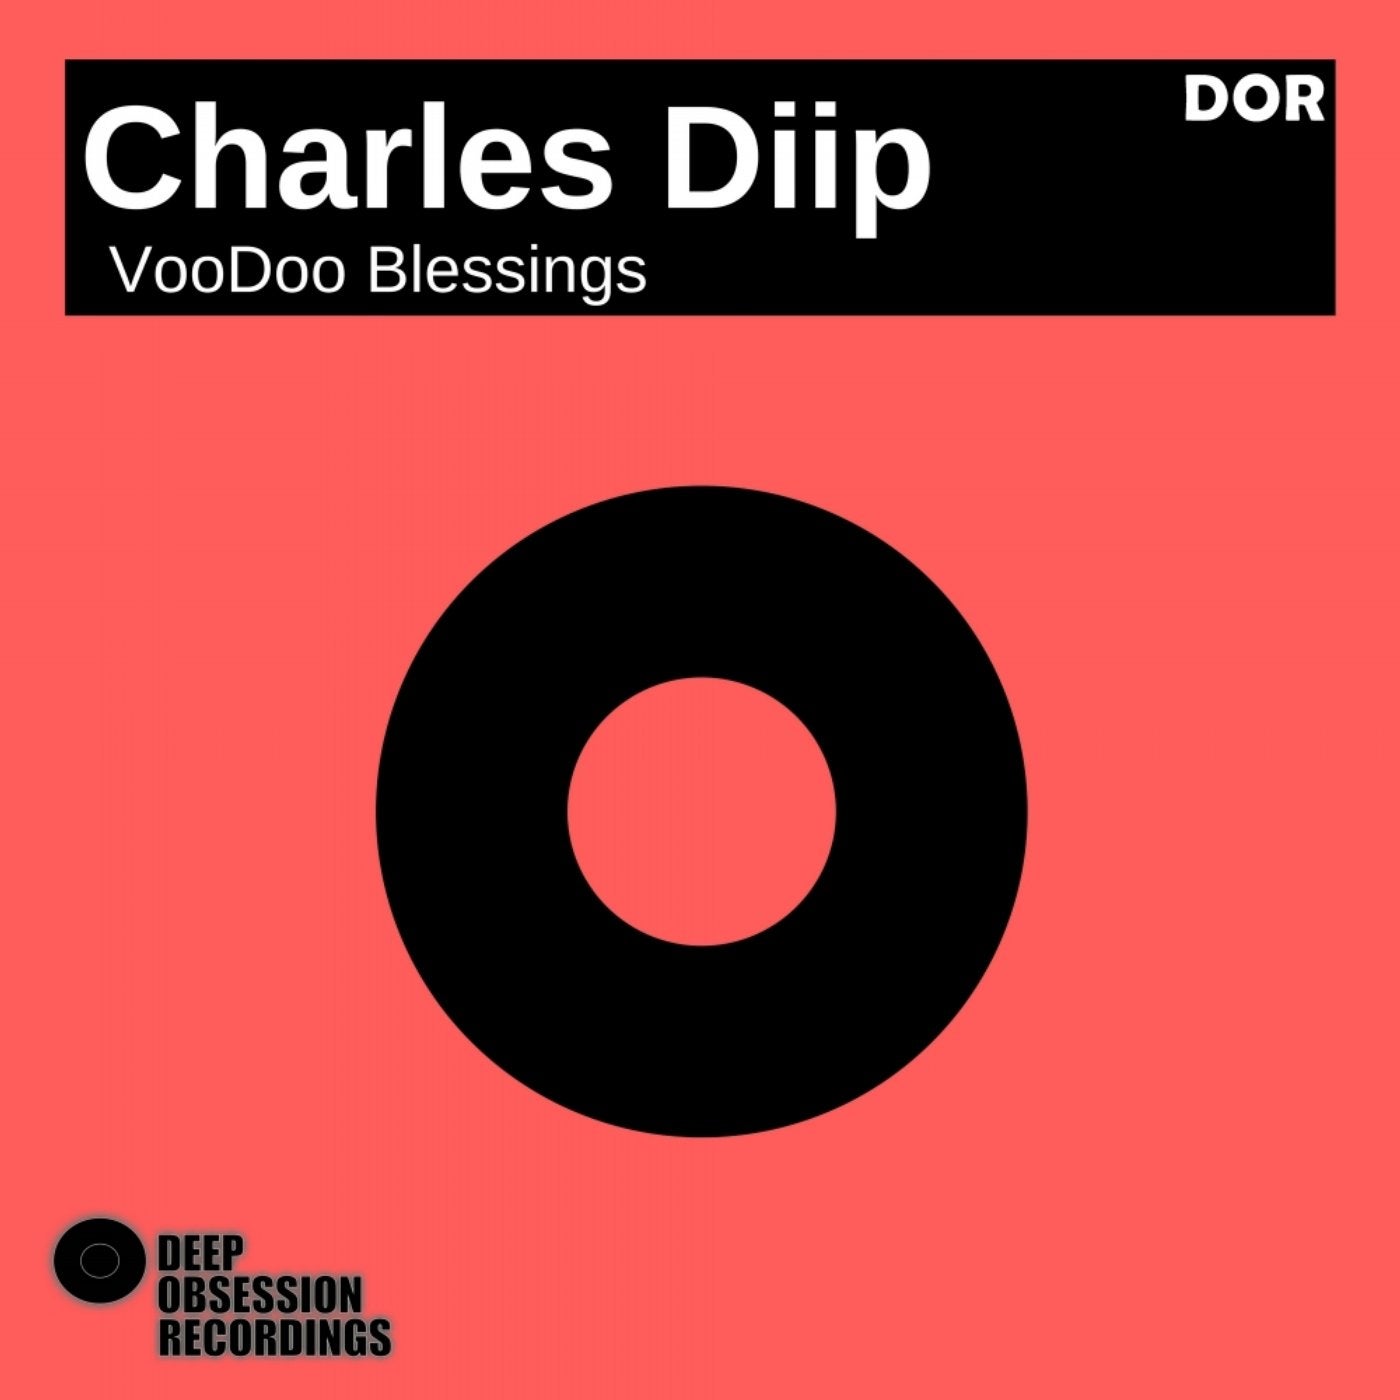 VooDoo Blessings